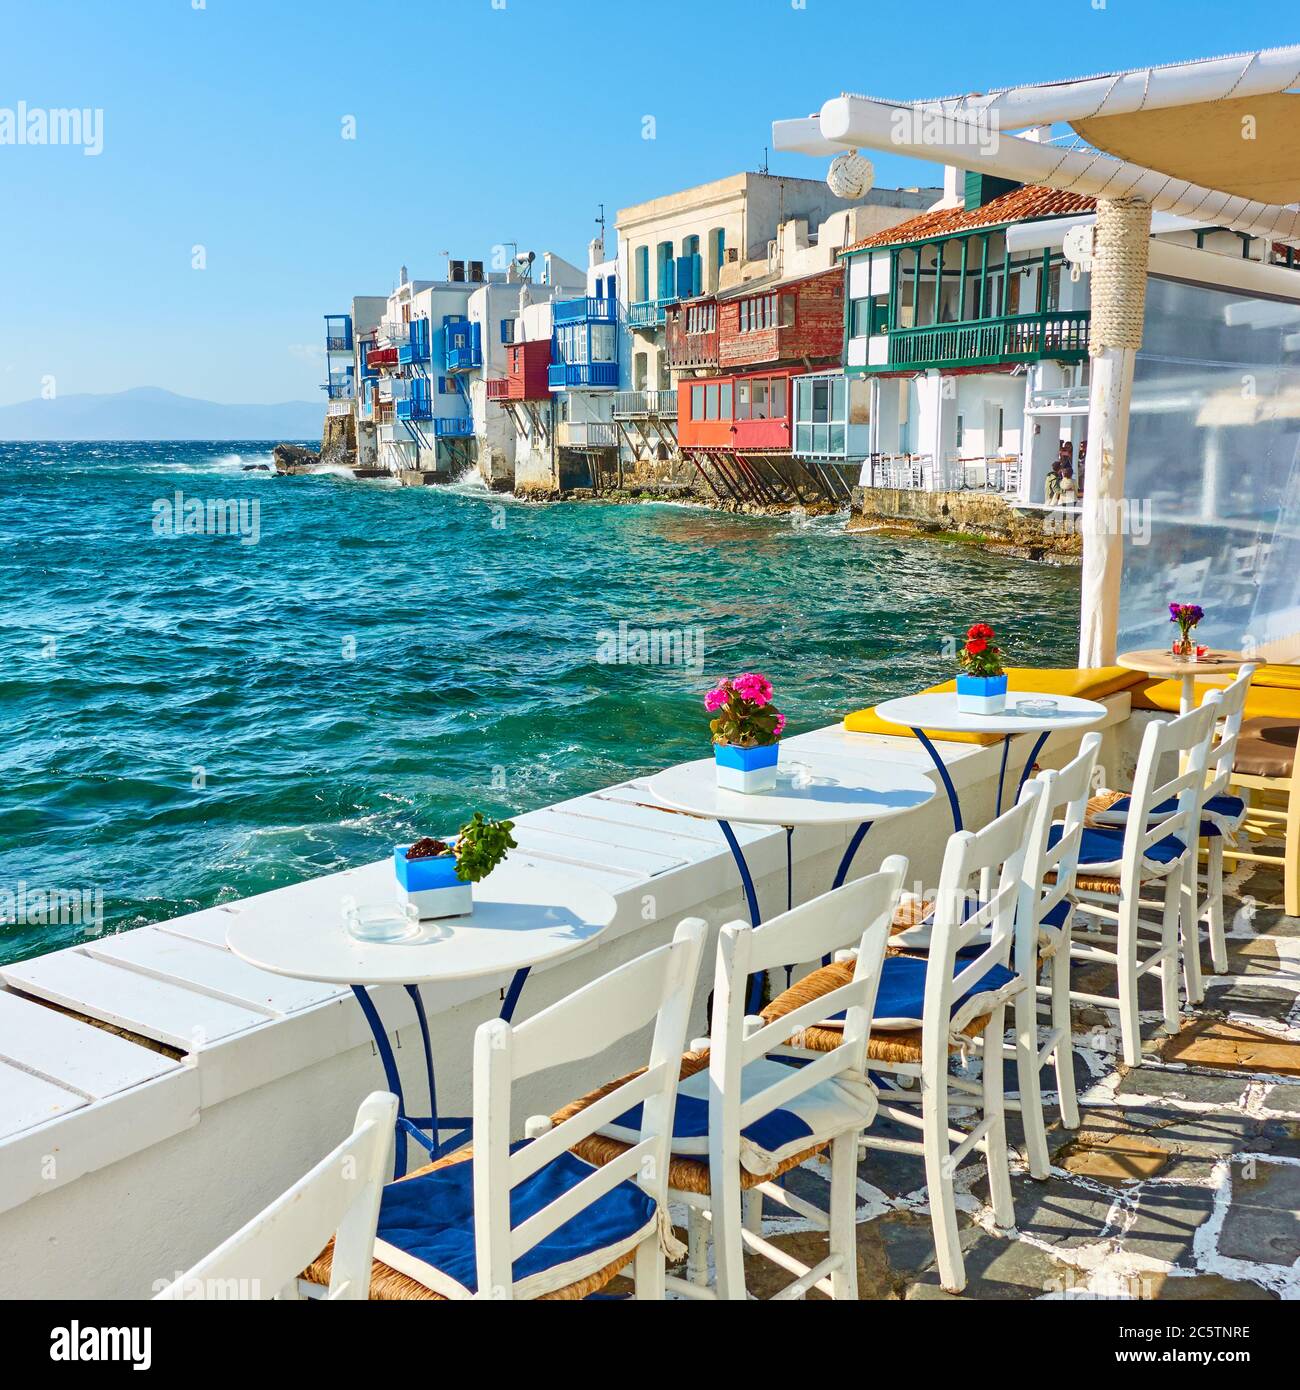 Café en plein air près de célèbres maisons au bord de la mer, sur l'île de Mykonos, en Grèce Banque D'Images